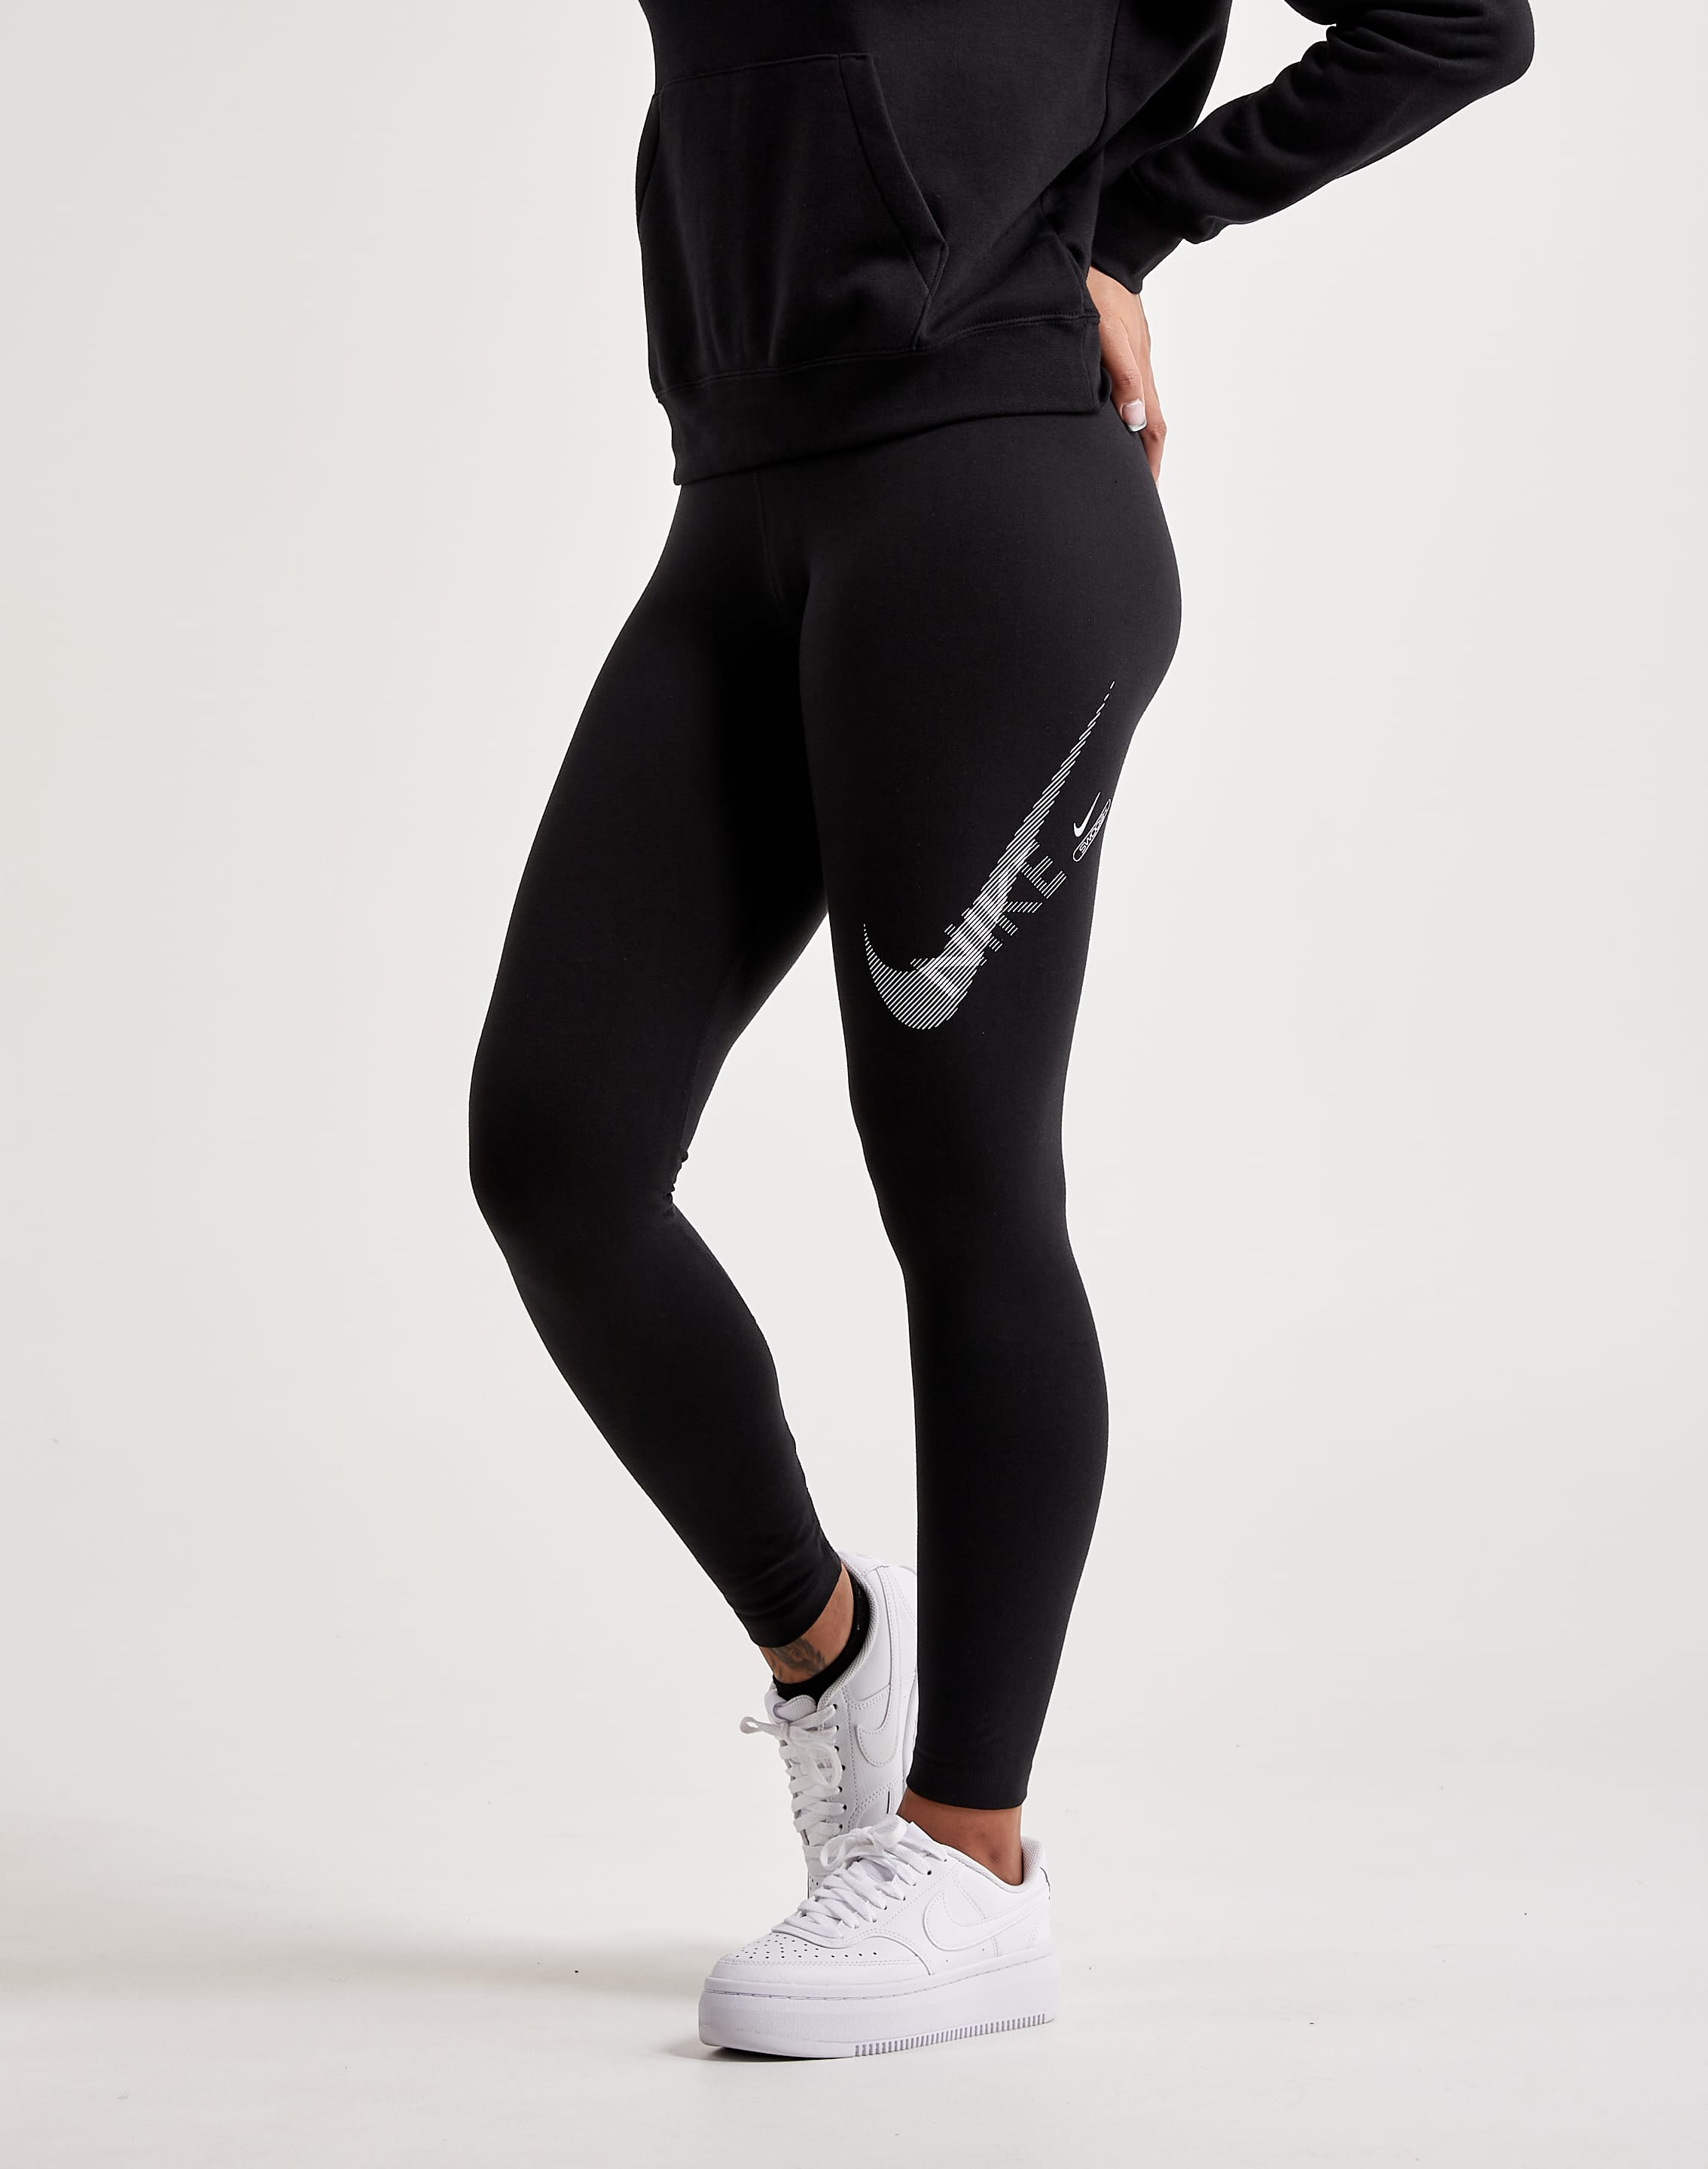 Nike Women's Sportswear SWOOSH Leggings LIMITED - Black DR5617 010 - Size  XS 